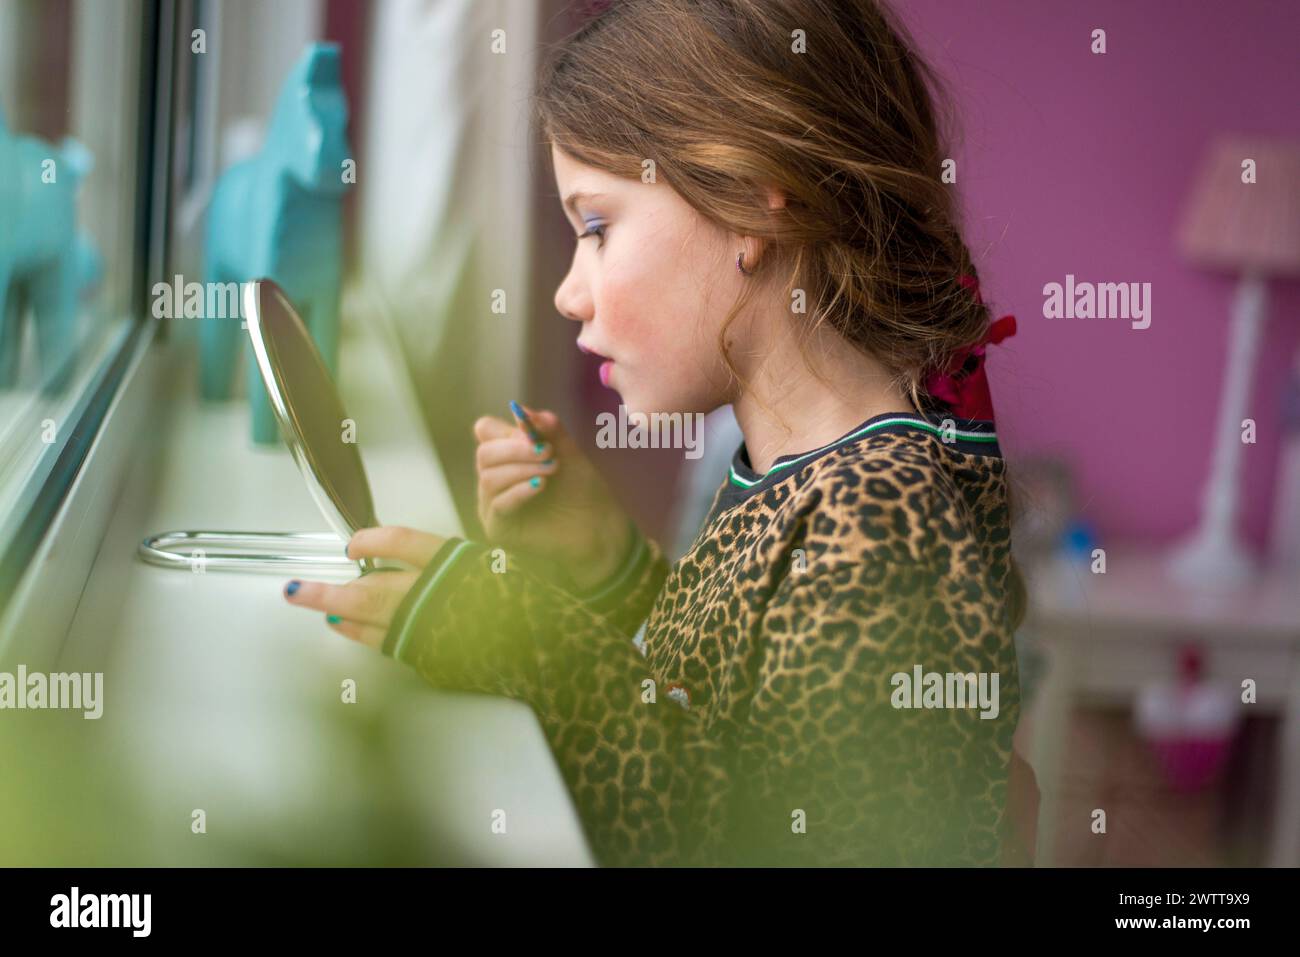 Ein junges Mädchen hat sich darauf konzentriert, Make-up am Fenster aufzutragen Stockfoto